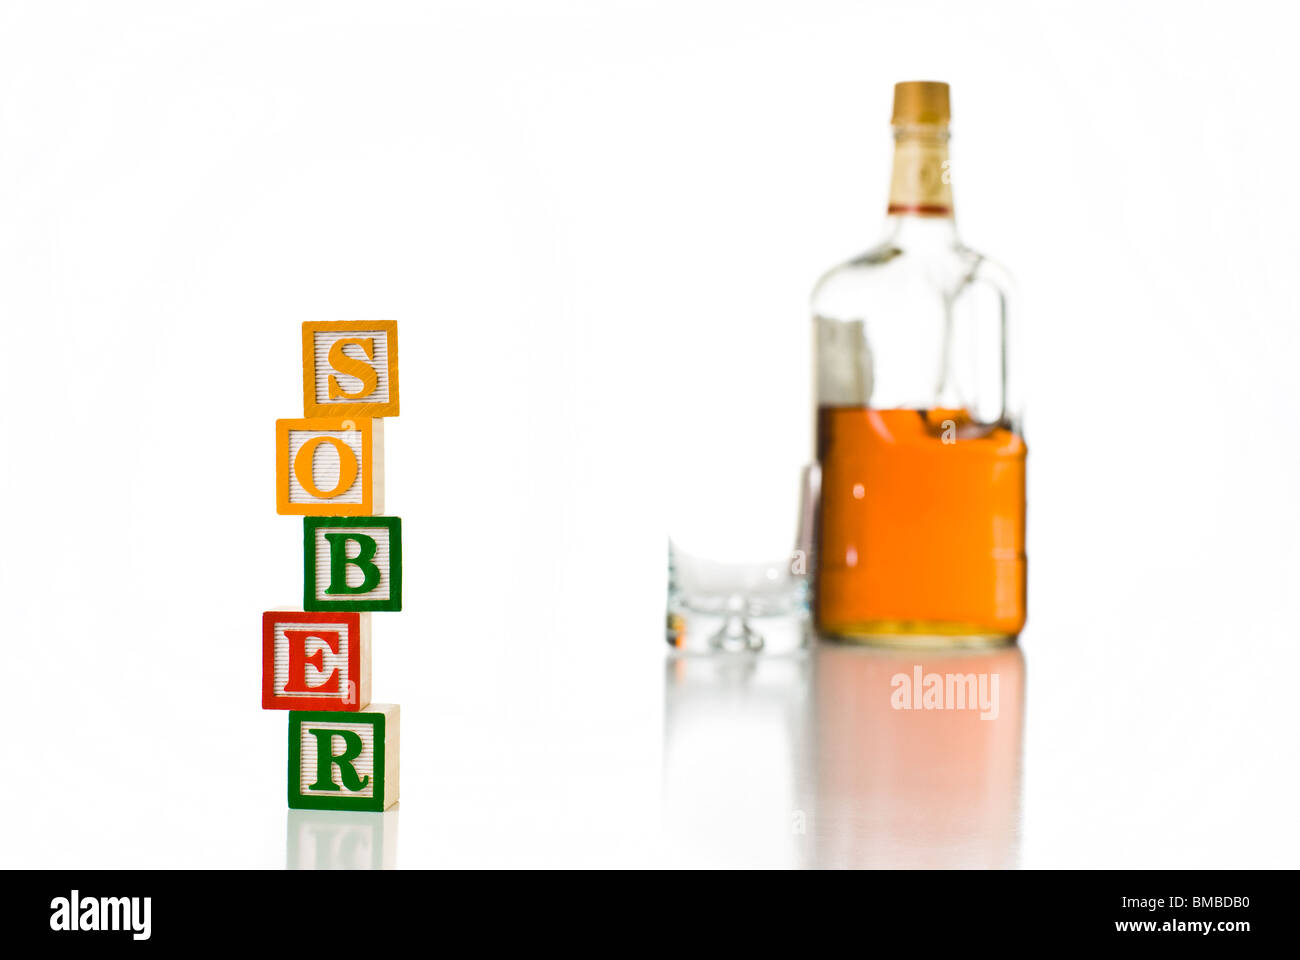 Enfants colorés blocks spelling relativement sobre avec une bouteille d'alcool et de verre Banque D'Images